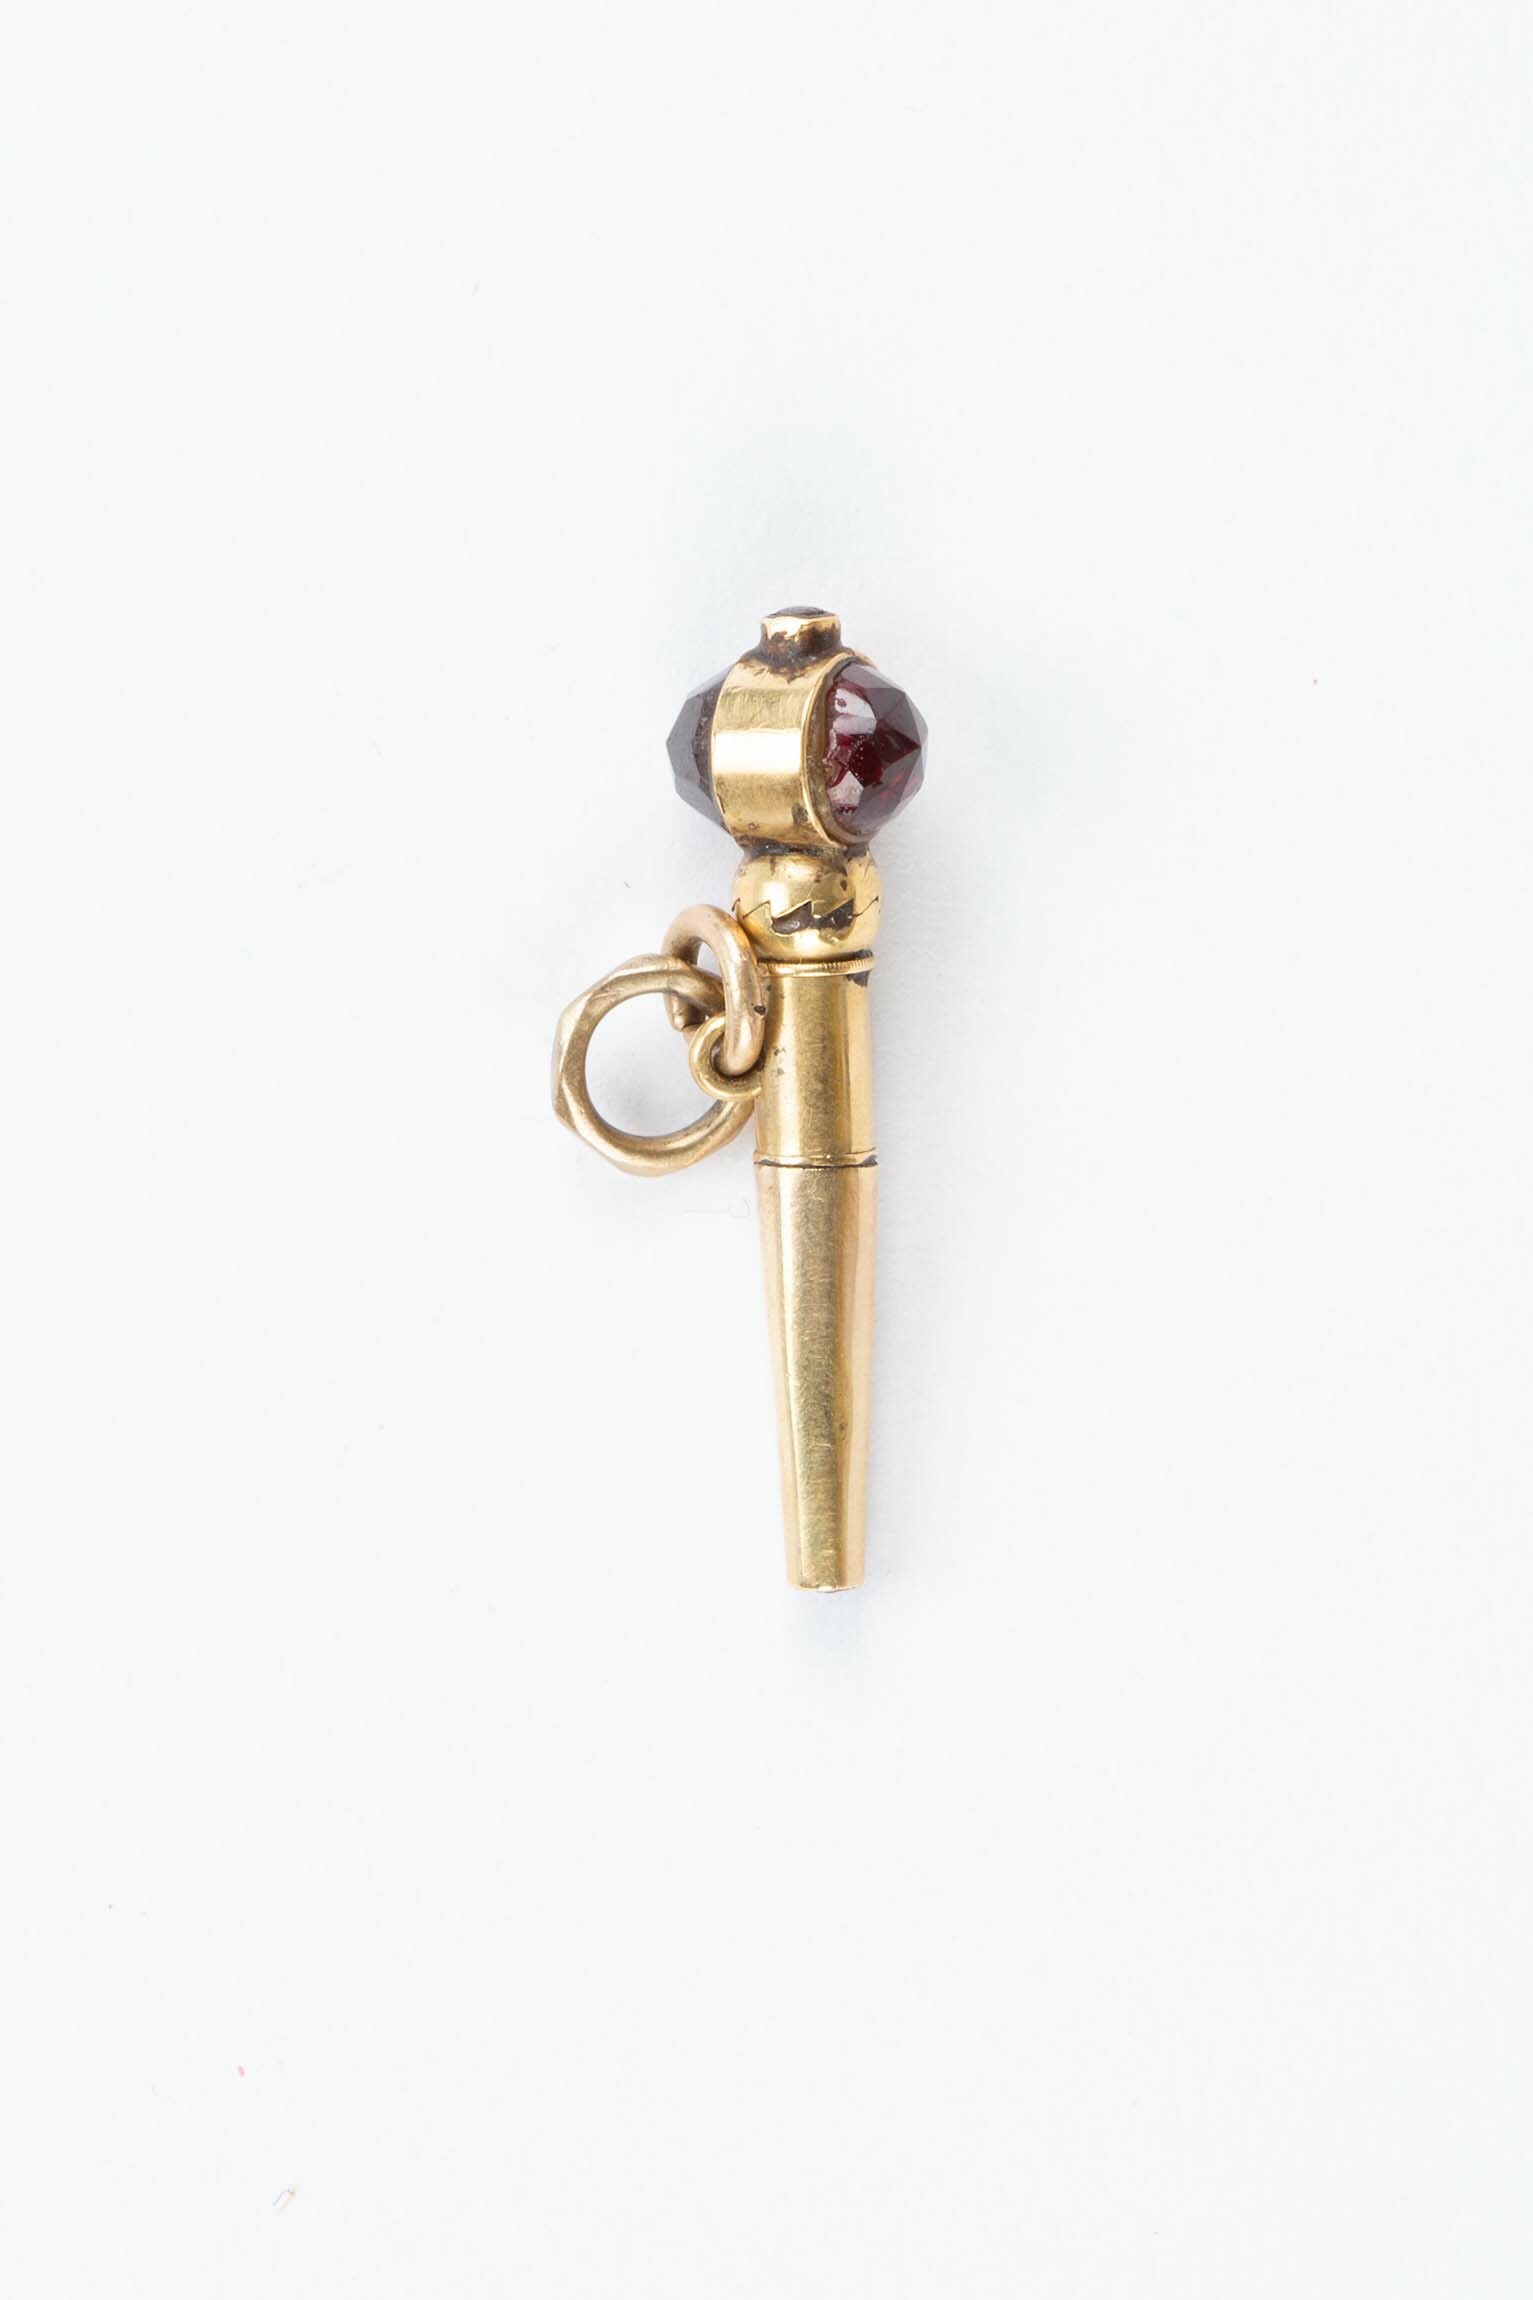 Schlüssel für Taschenuhr, wohl 19. Jahrhundert (Deutsches Uhrenmuseum CC BY-SA)